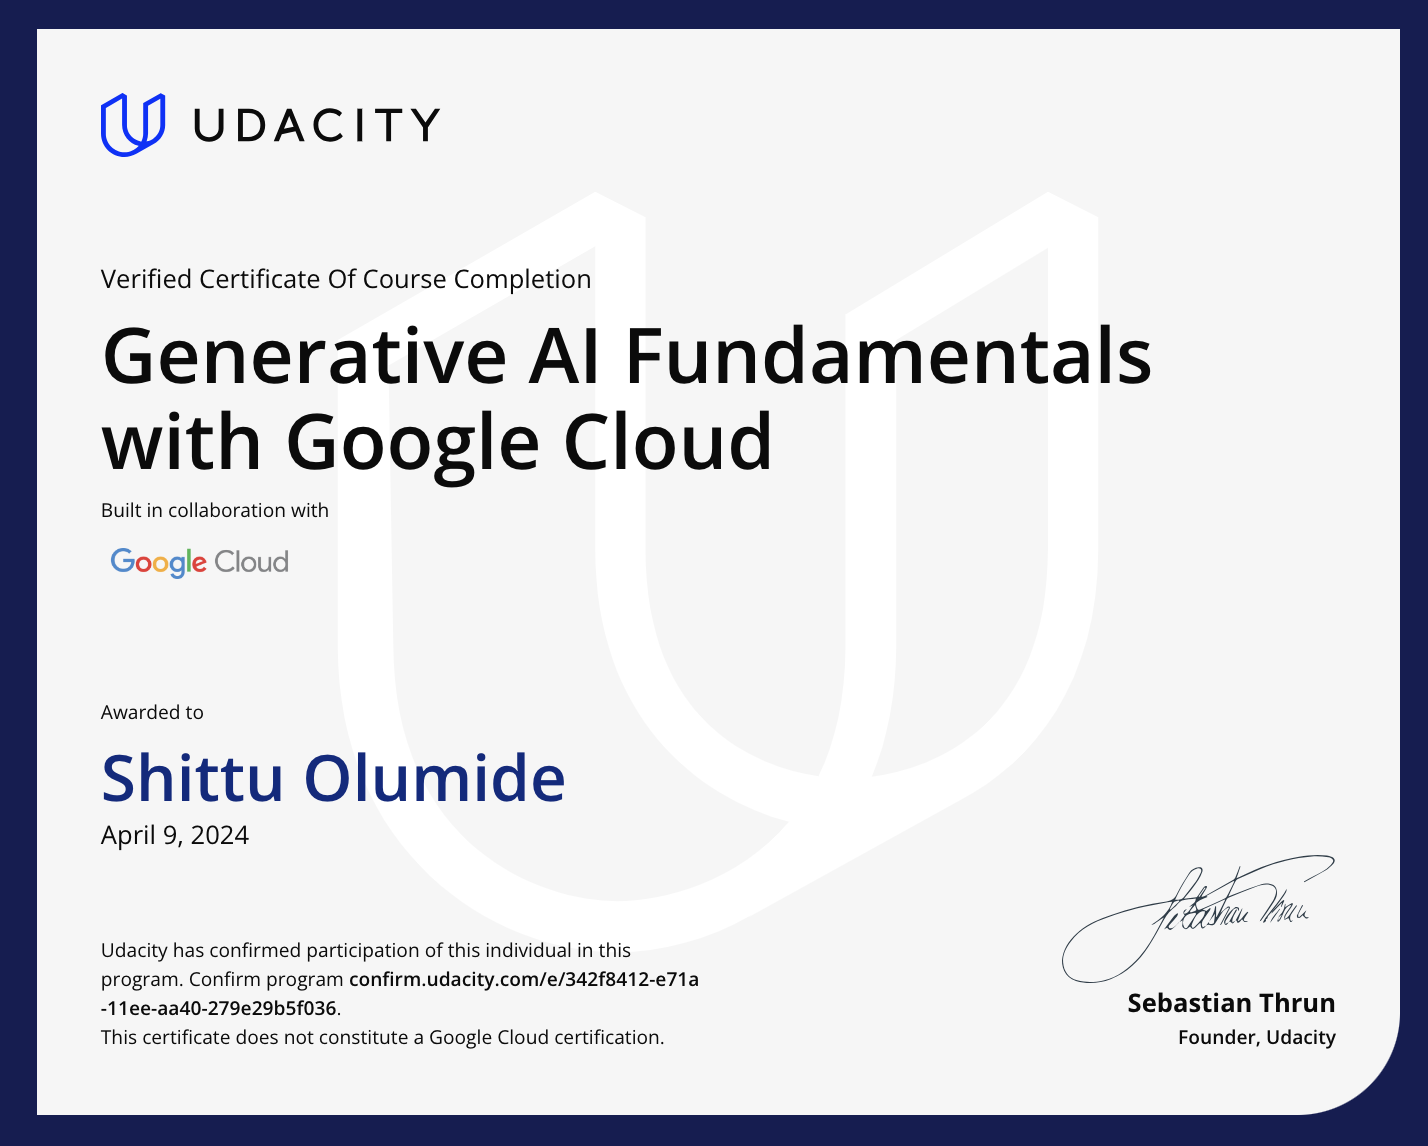 Shittu Olumide Generative AI Fundamentals with Google Cloud Certificate